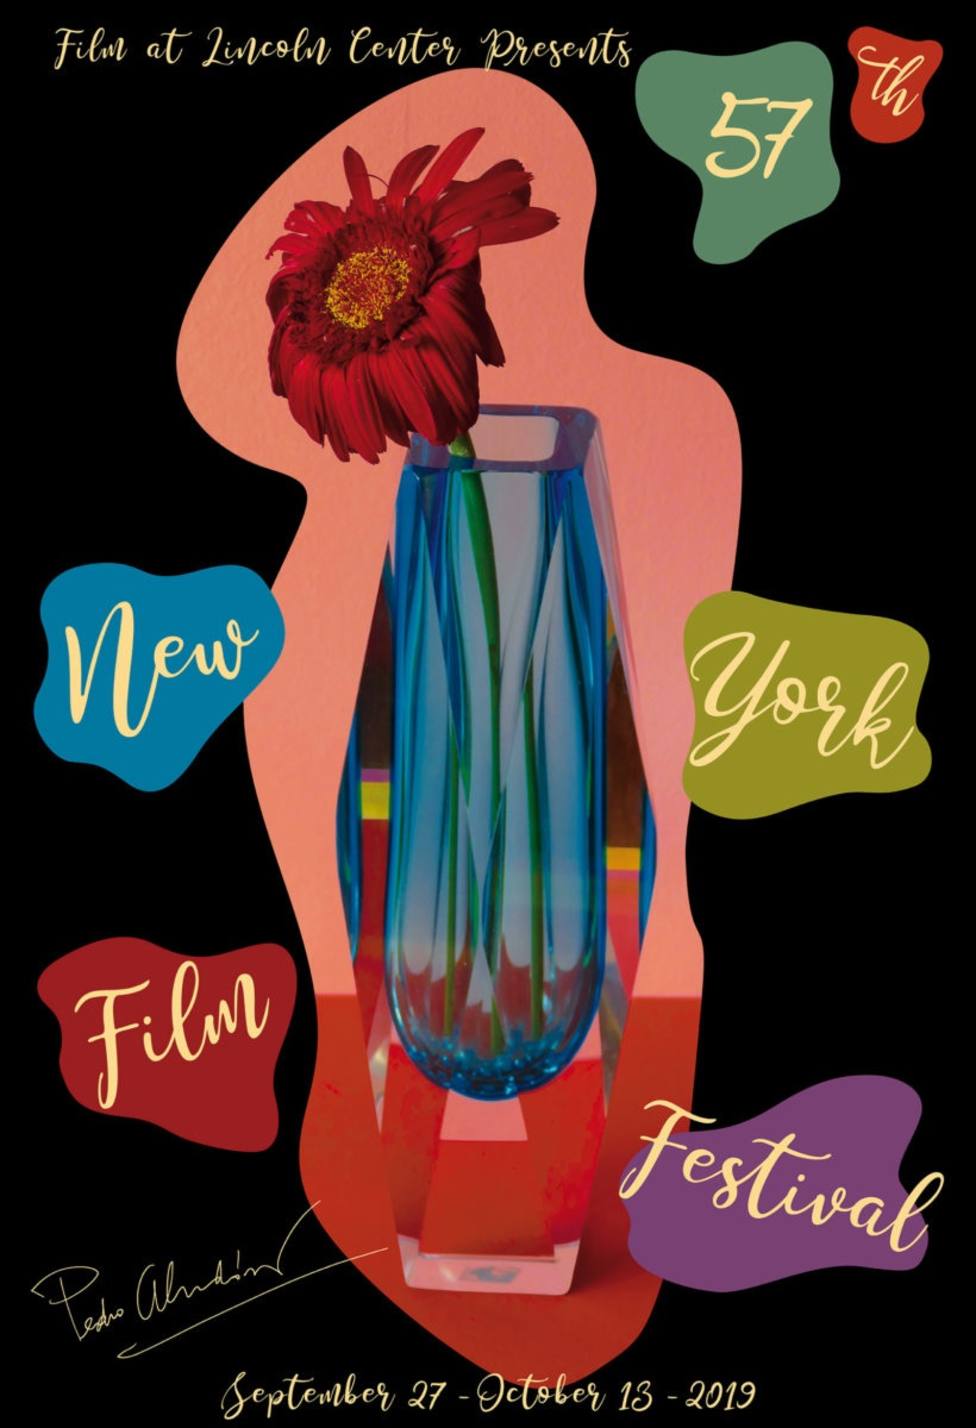 Pedro Almodóvar diseña el cartel del Festival de Cine de Nueva York y participará con Dolor y Gloria